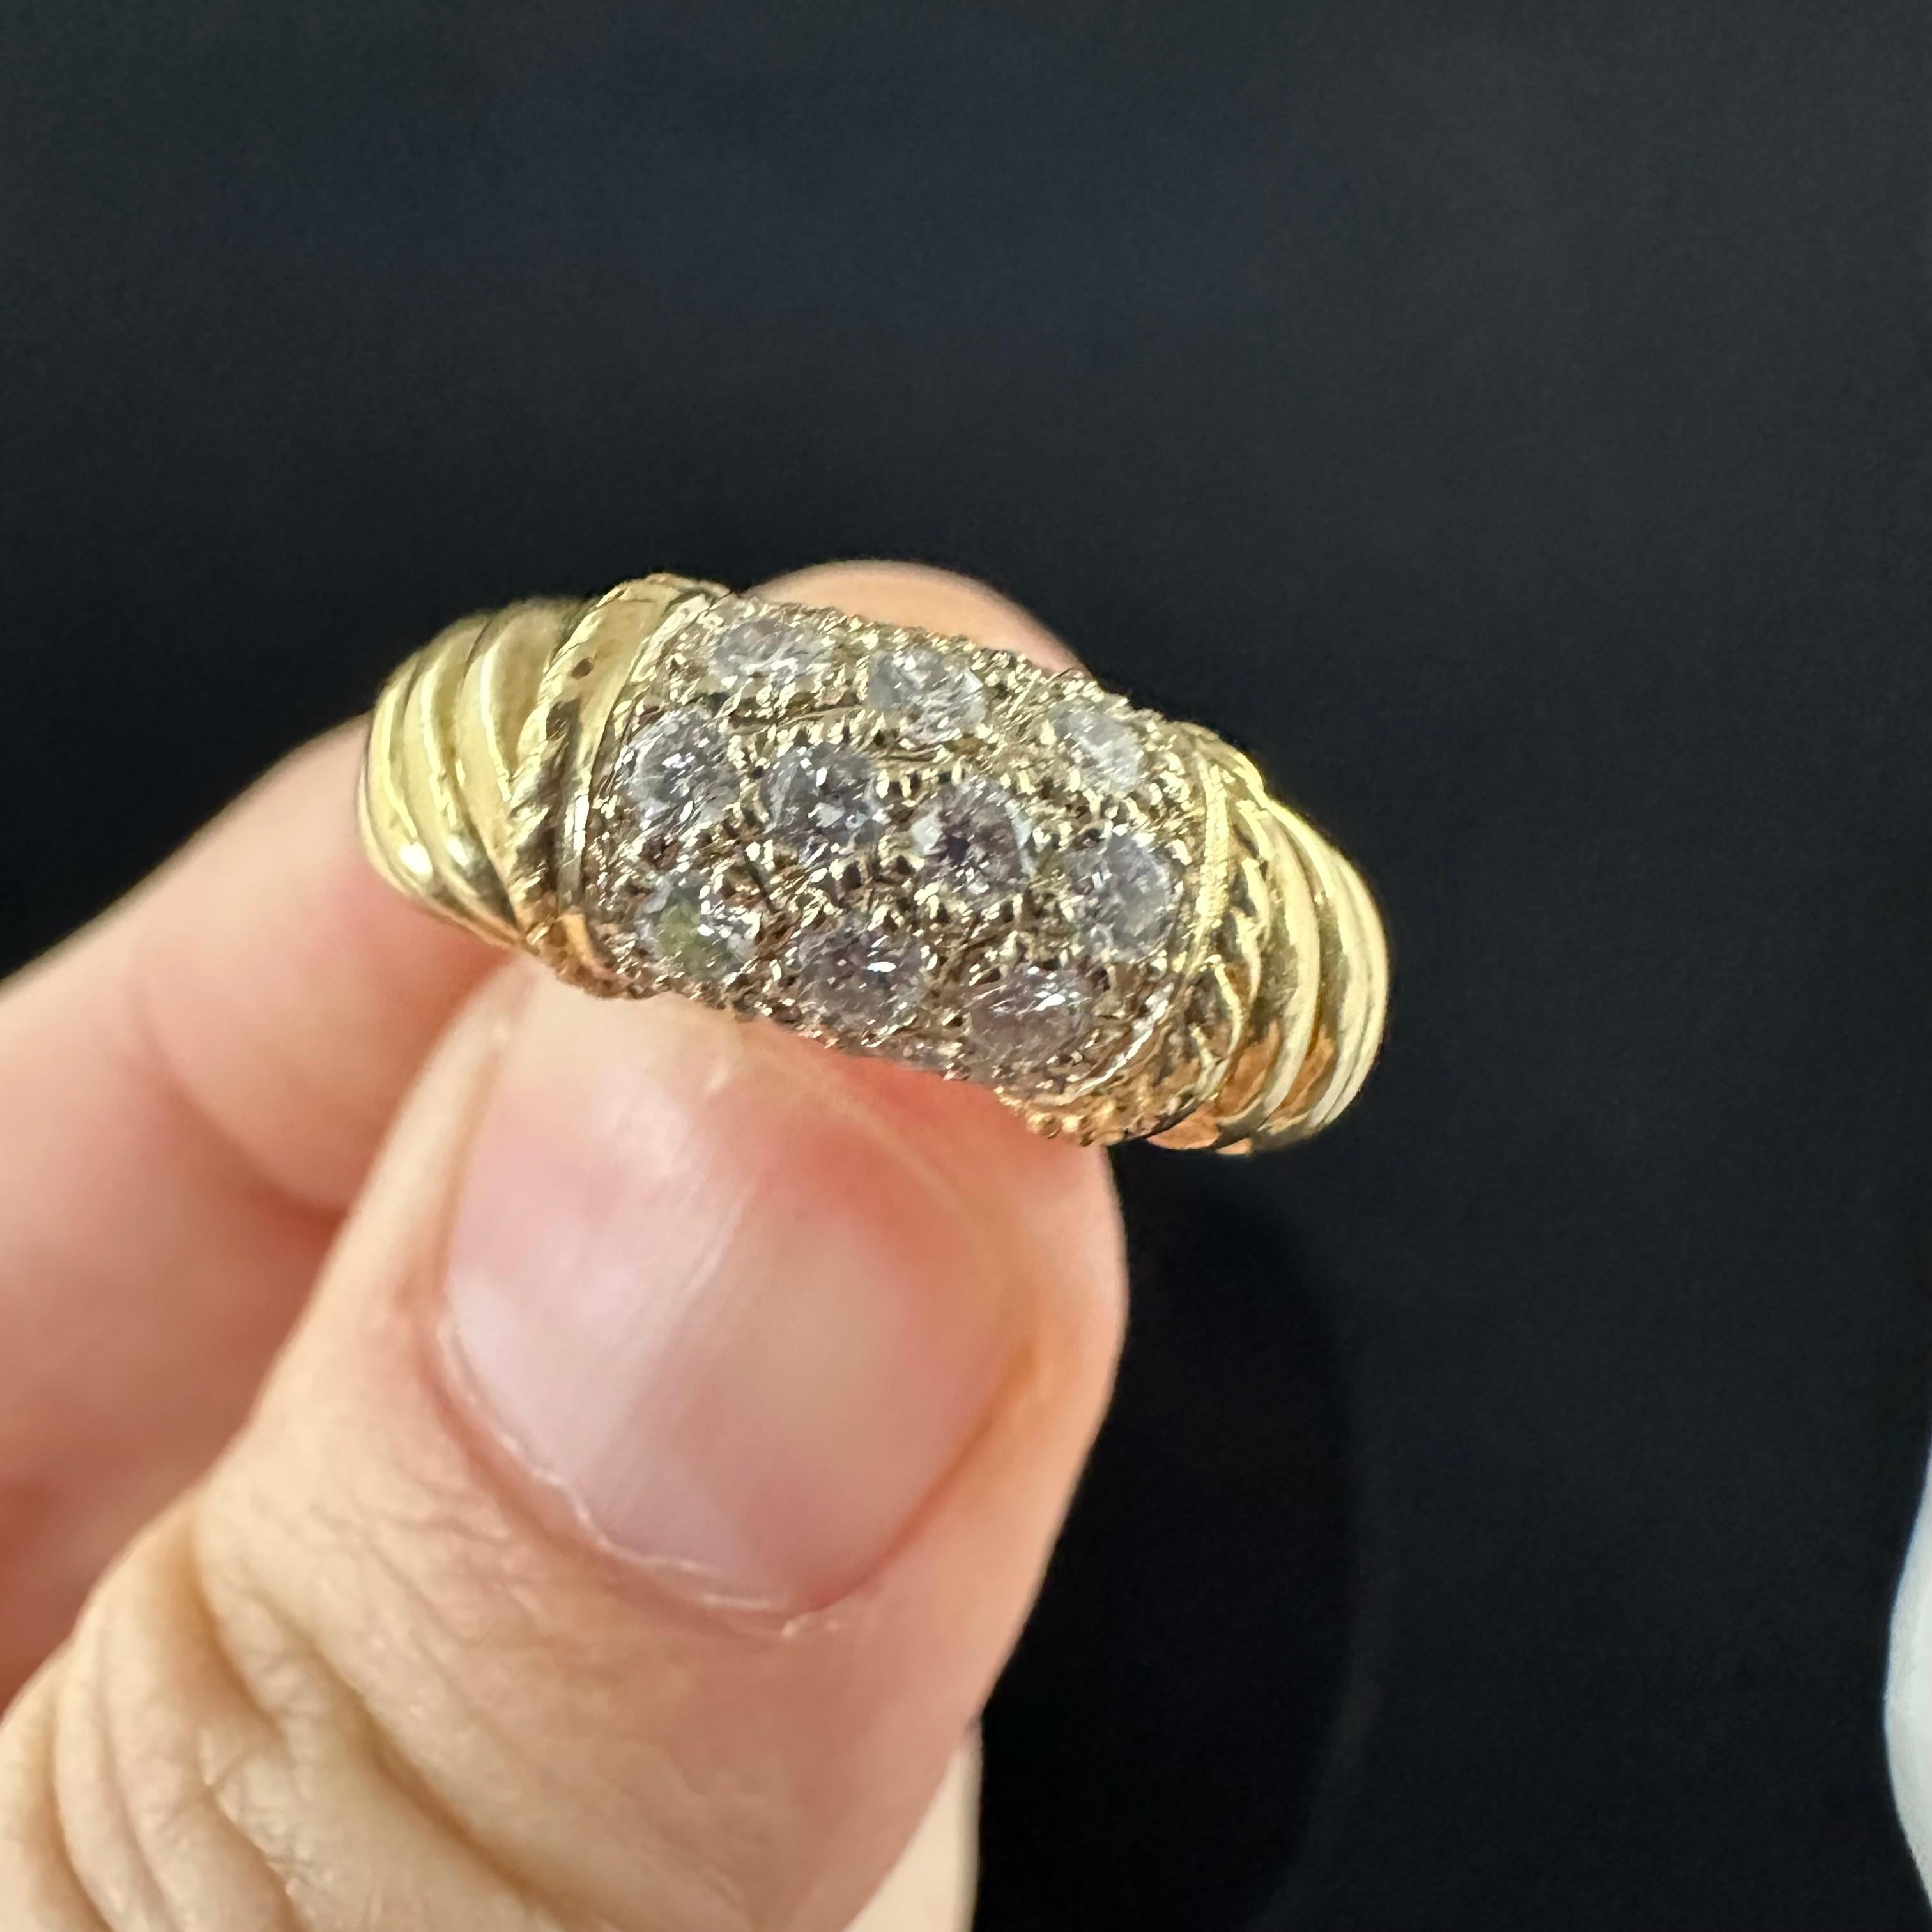 Gelbgold 18k alle Diamanten VCA Philippine Ring Größe 4 kann ein wenig nach oben angepasst werden. Hallmarked VCA nummeriert und die .50 ct Diamanten. 1968 wurde diese Version in vielen Variationen von harten Stein sided produziert, obwohl diese